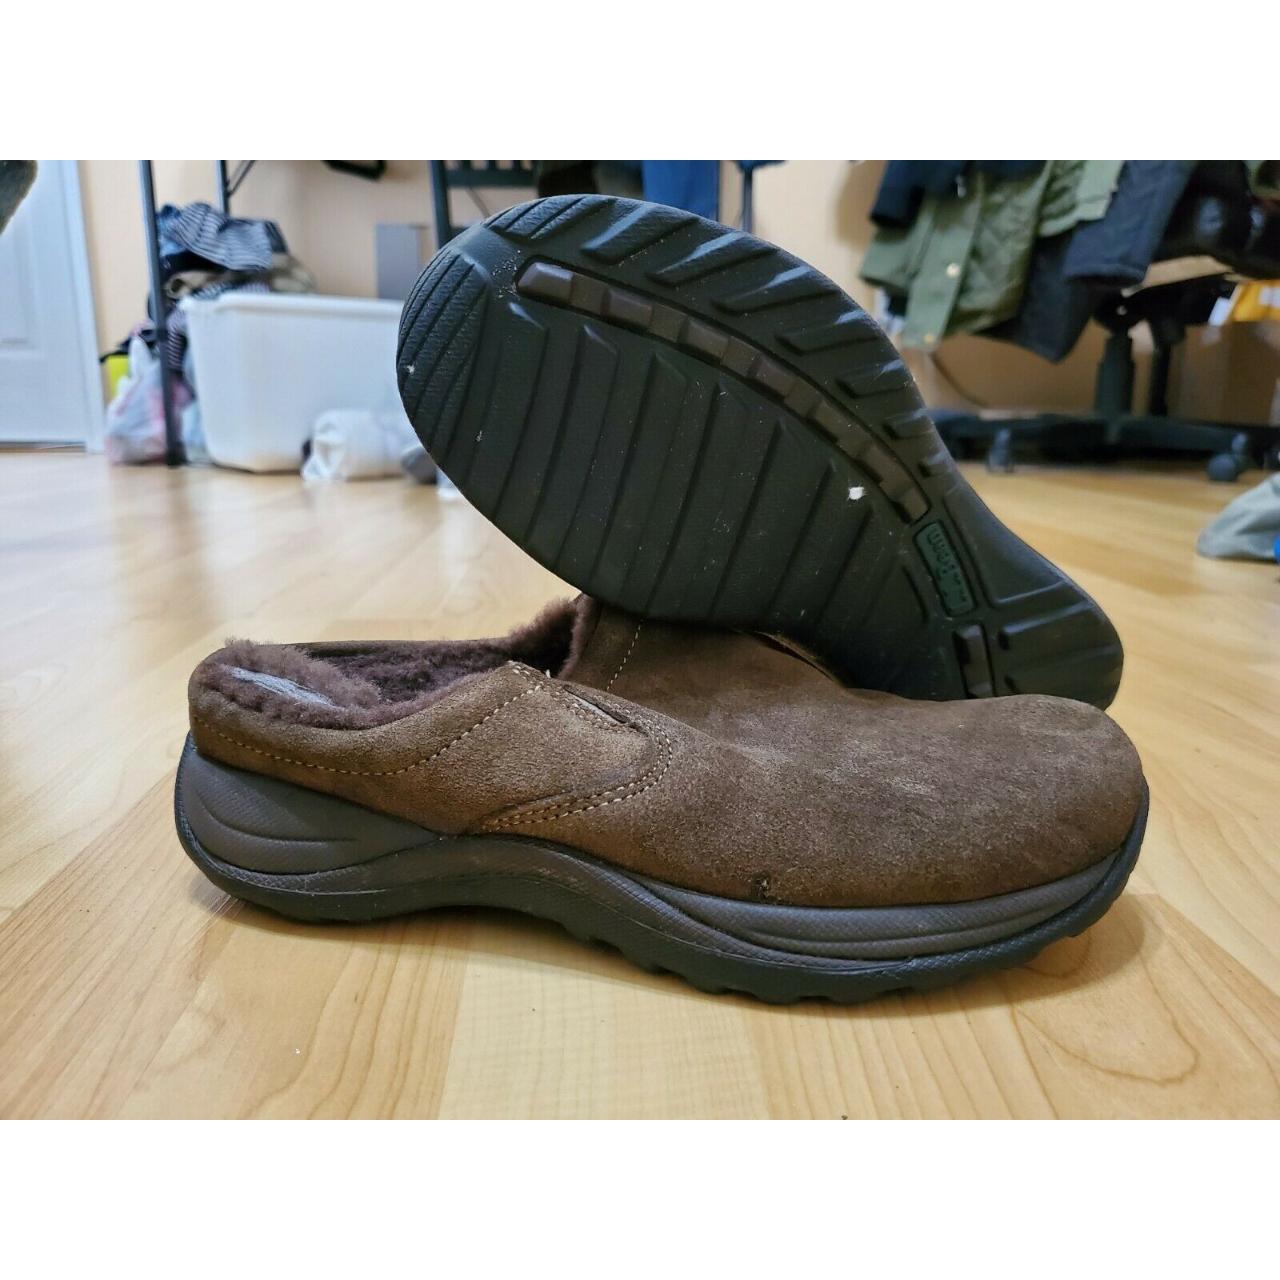 LL Bean Sport Moc Toe Slip On Women Loafer Shoe Size... - Depop